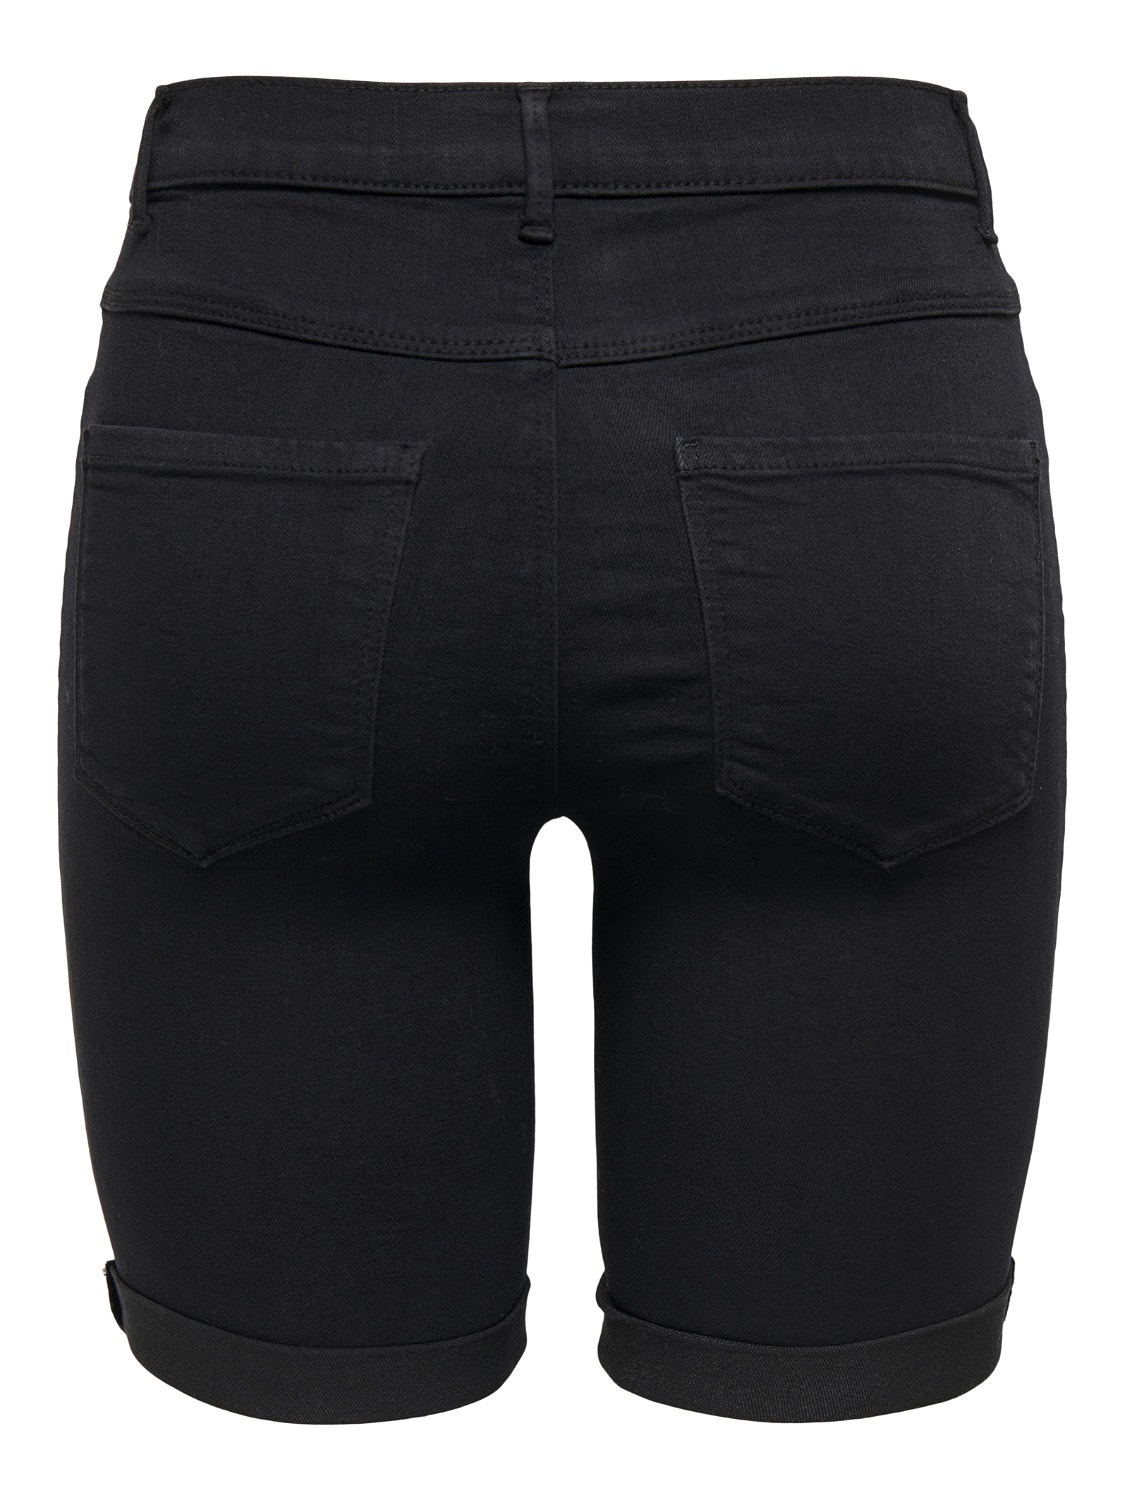 ONLY Pluie mi-long Shorts en jean -Black - 15176847